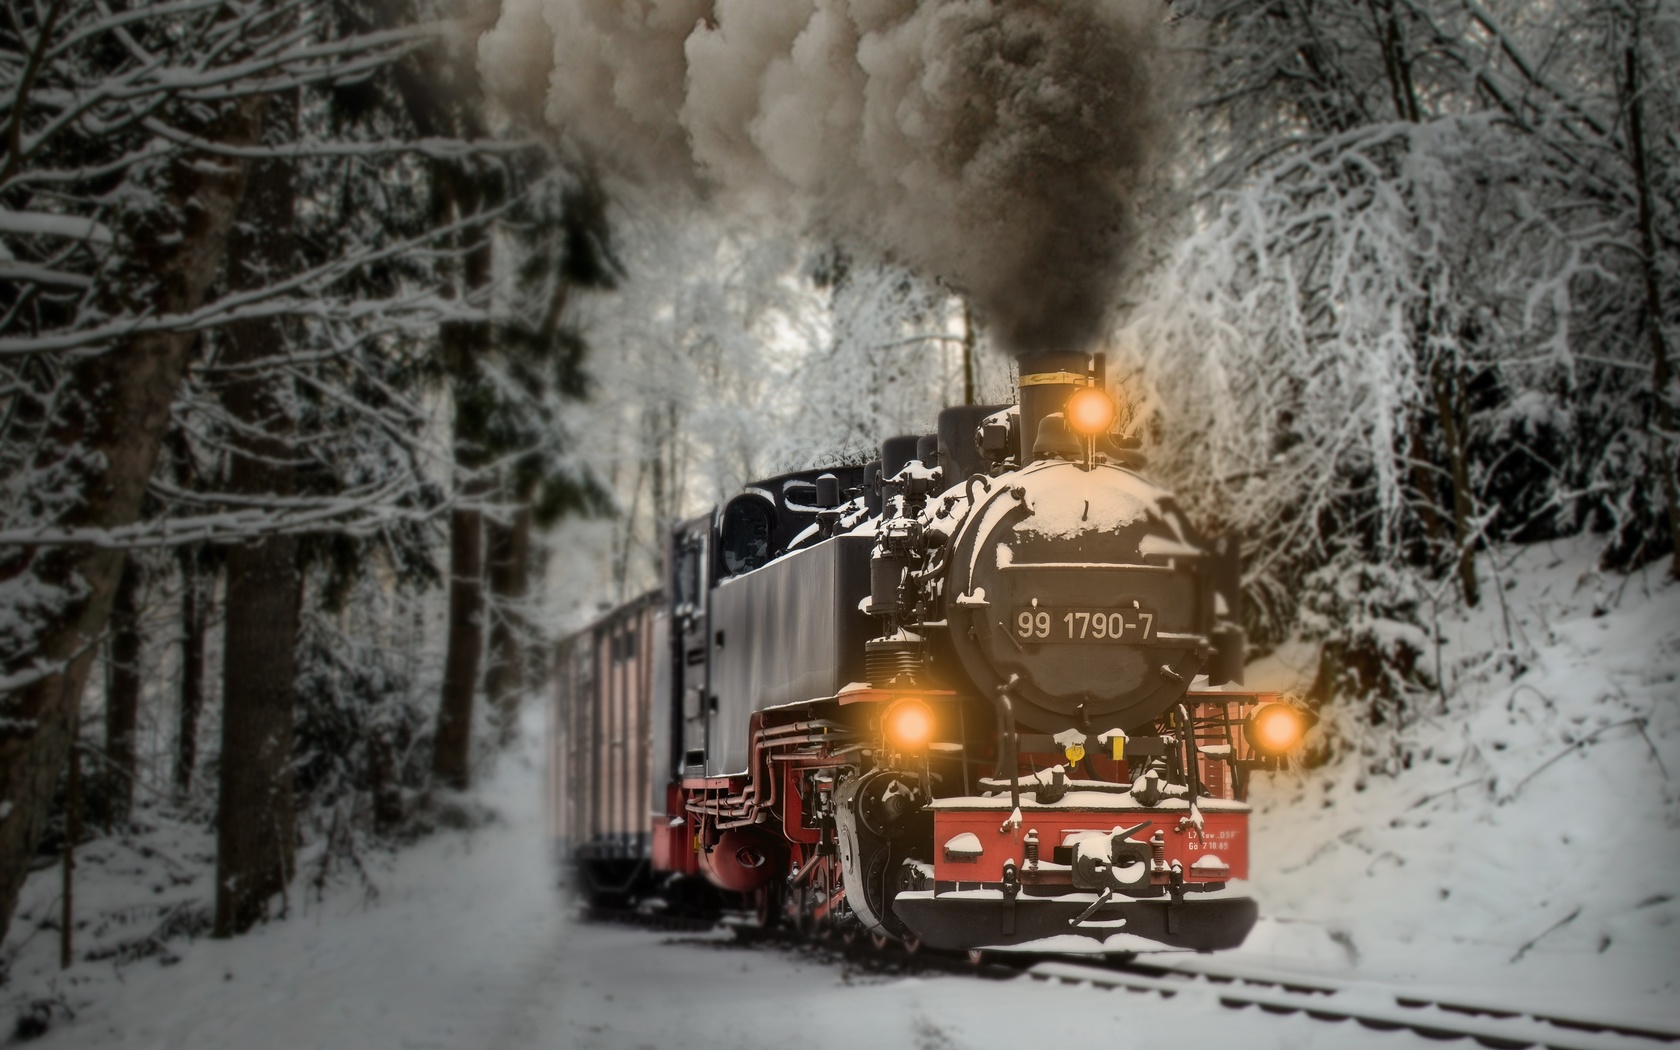 поезд, зима